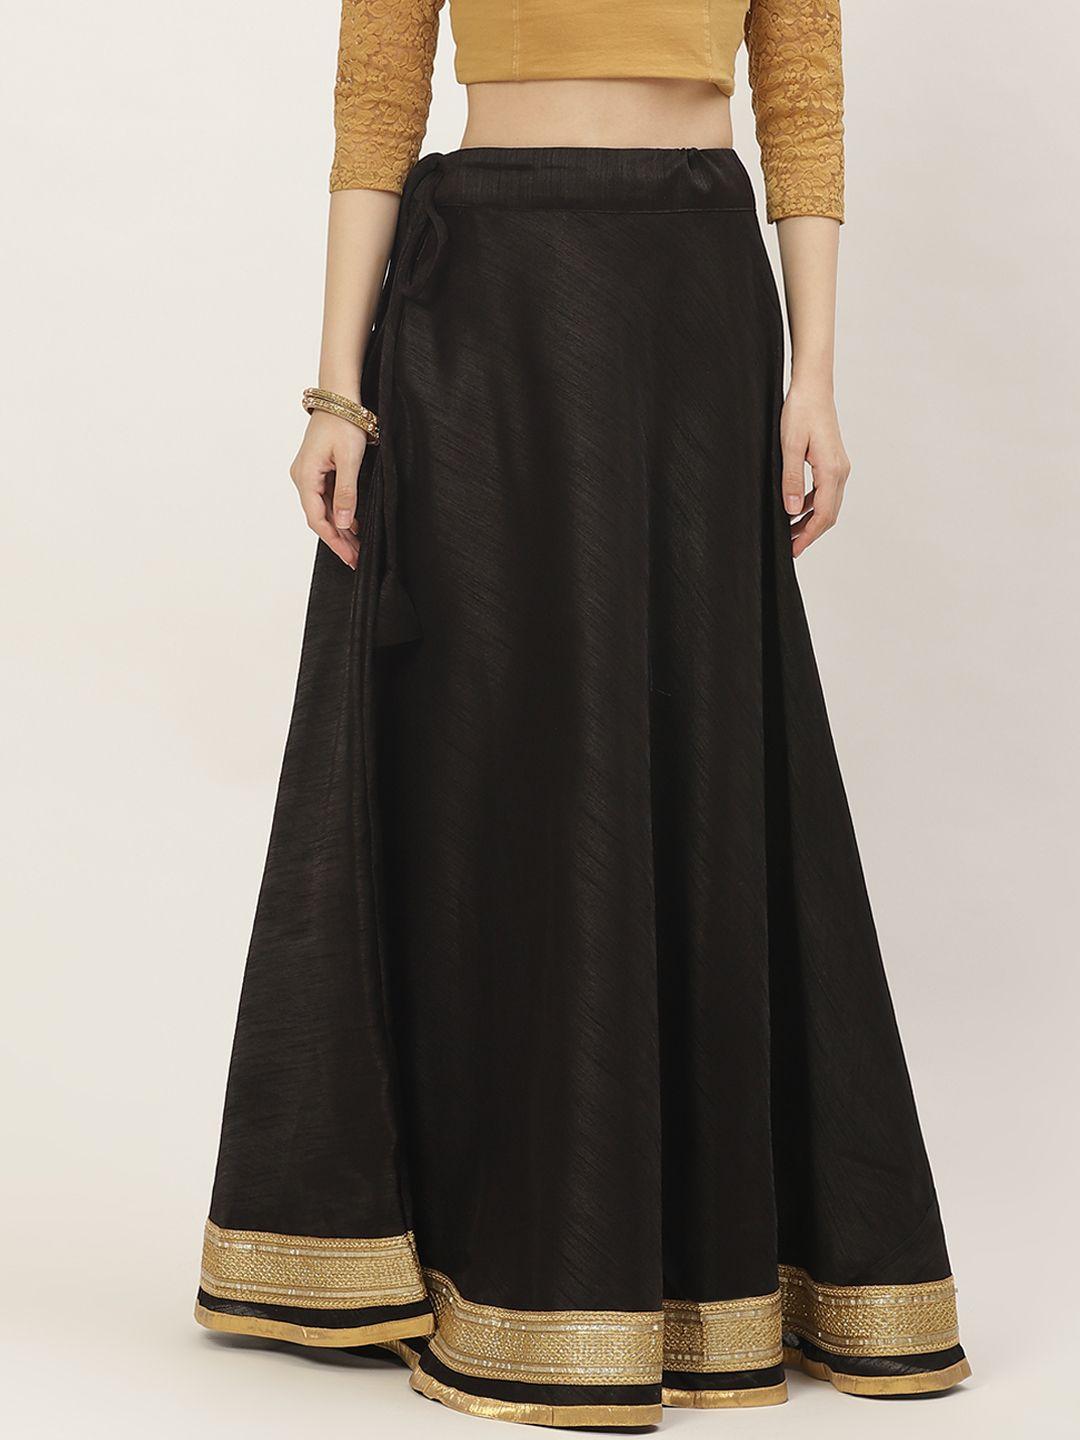 studio shringaar black & golden solid lehenga skirt with zari border